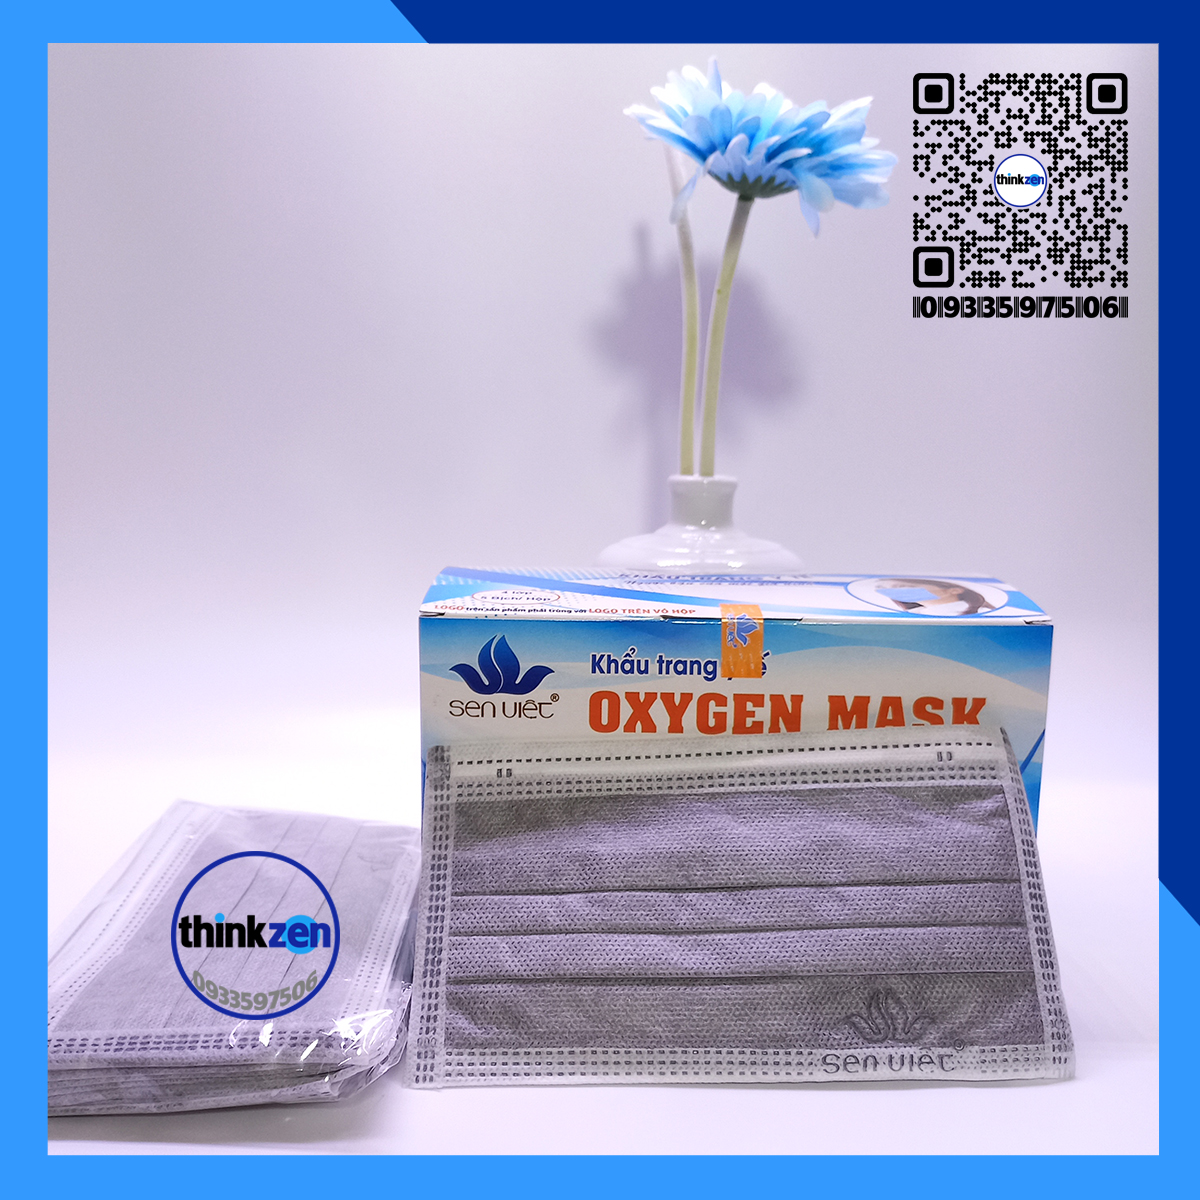 Khẩu trang y tế 4 lớp Sen Việt Oxygen Mask, khautrang 2D, kháng khuẩn chống bui, hợp thời trang